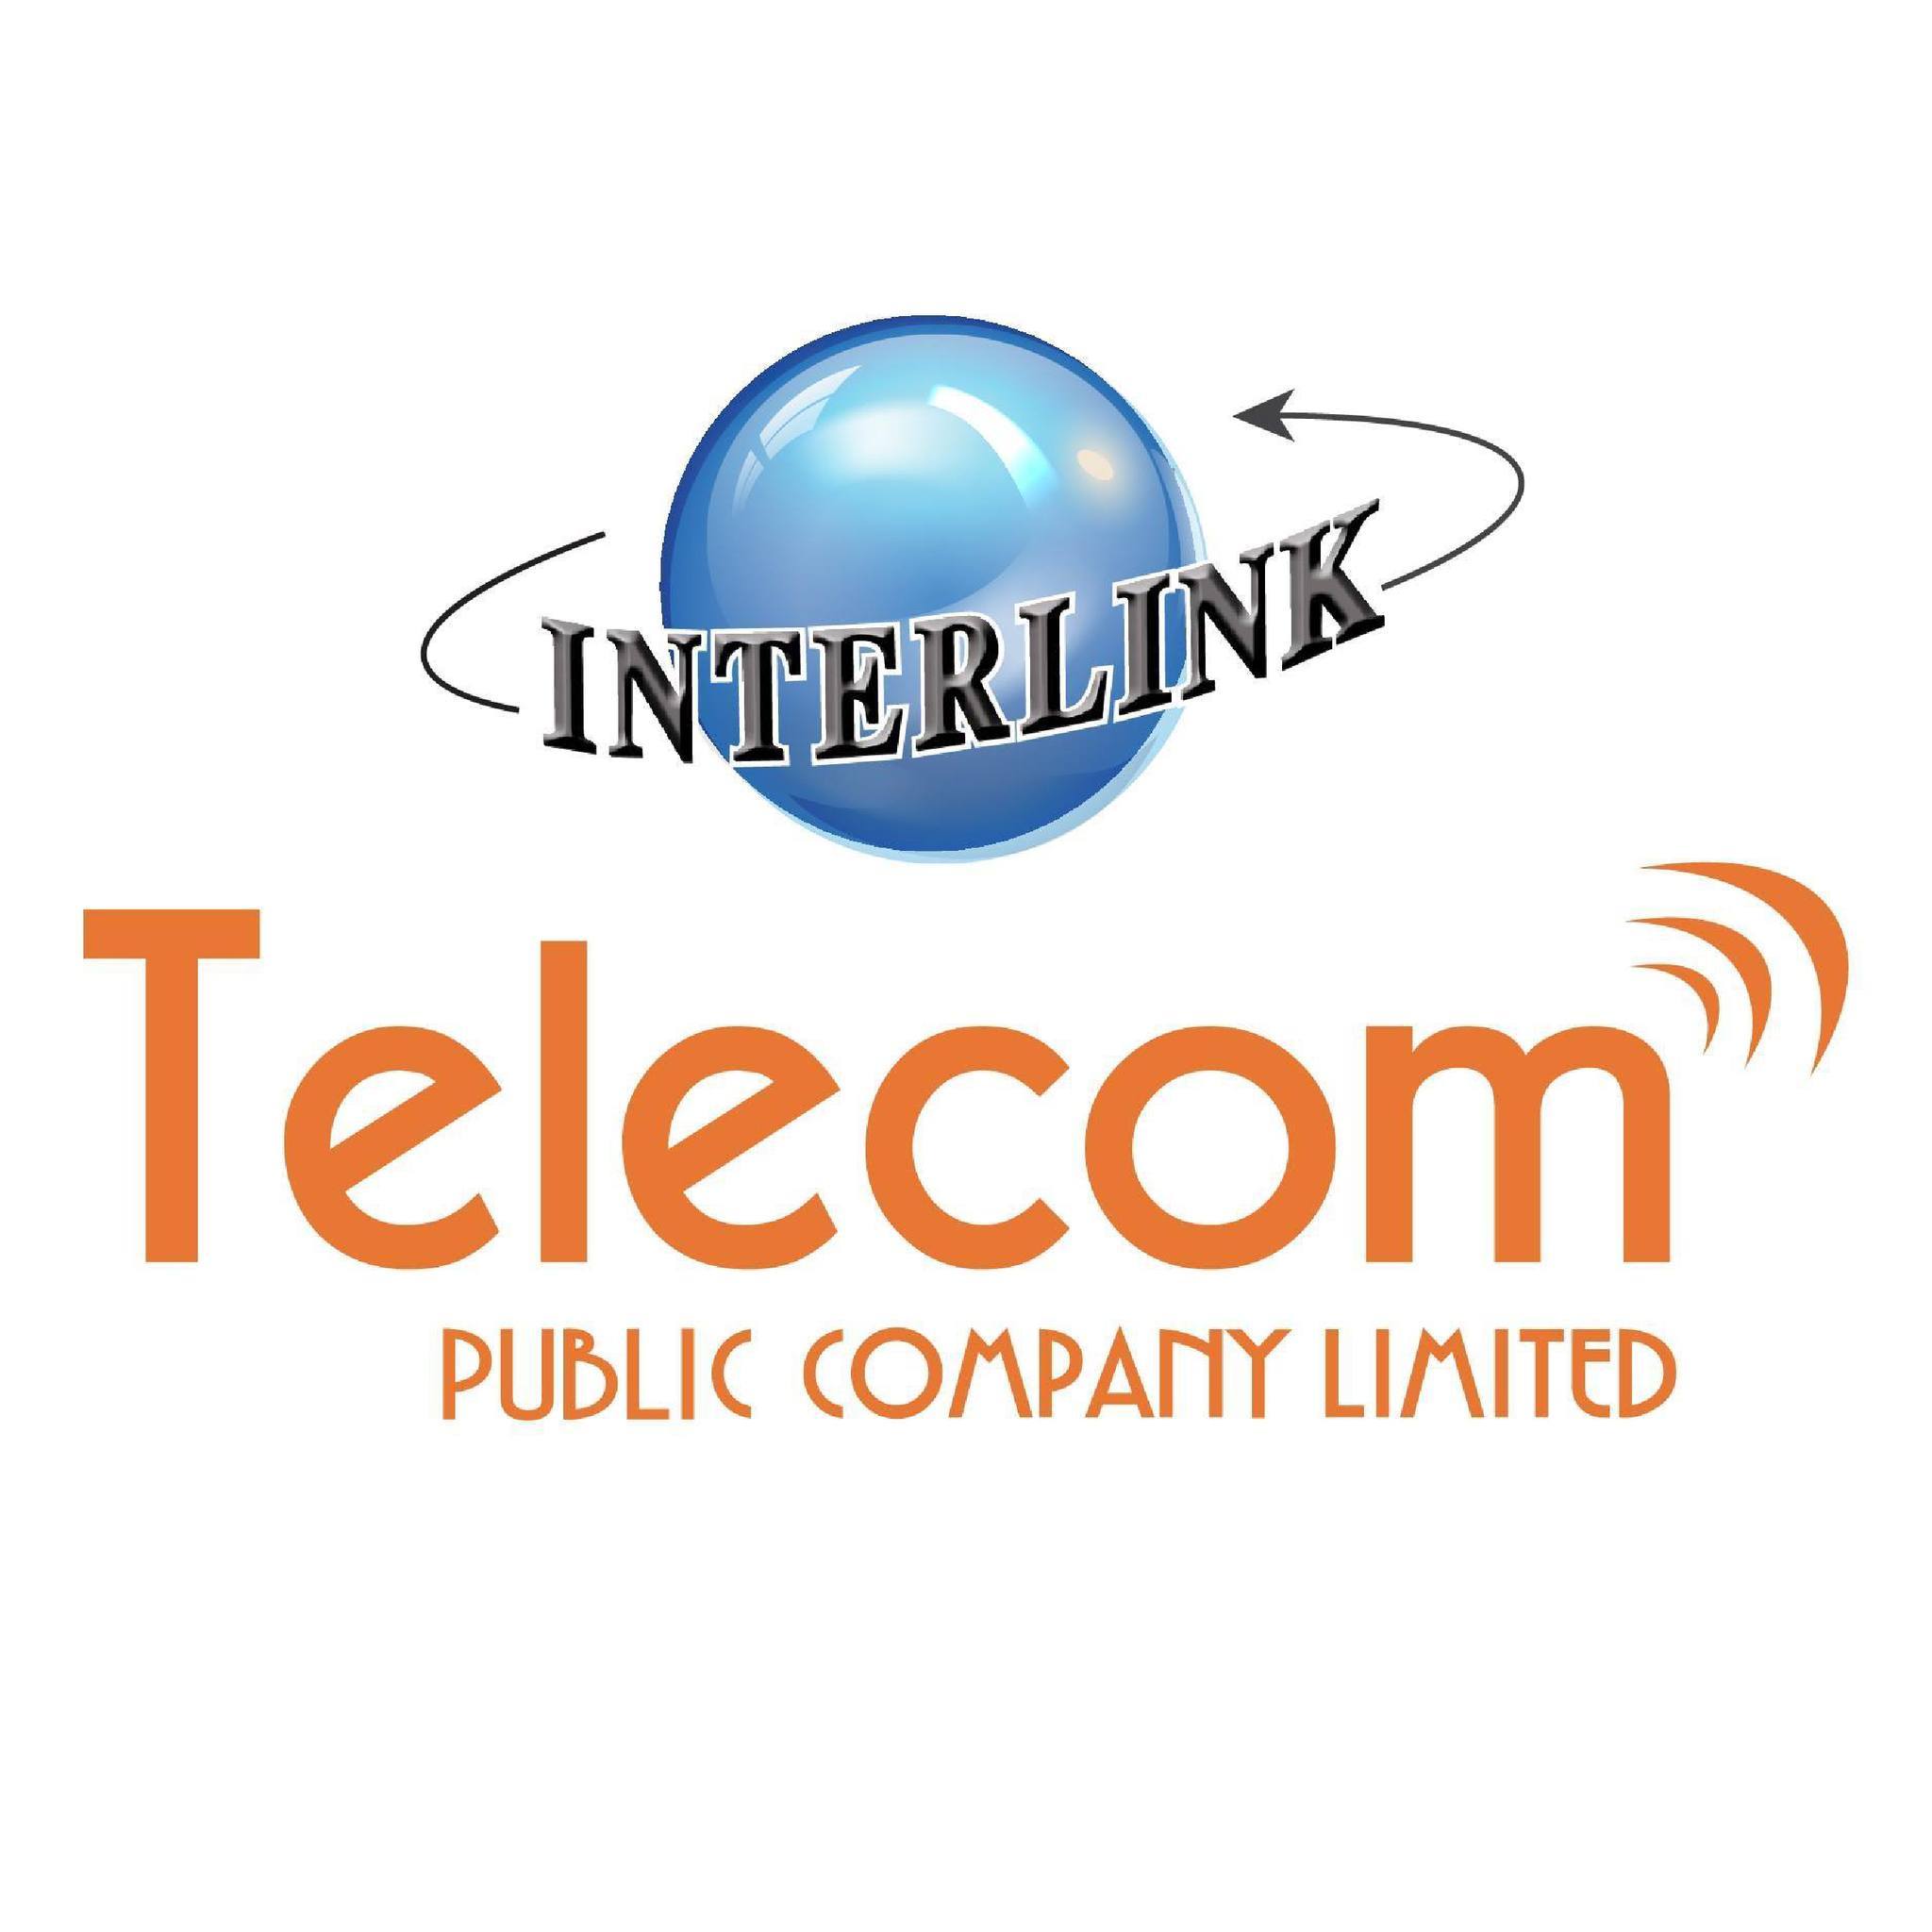 logo_telecom